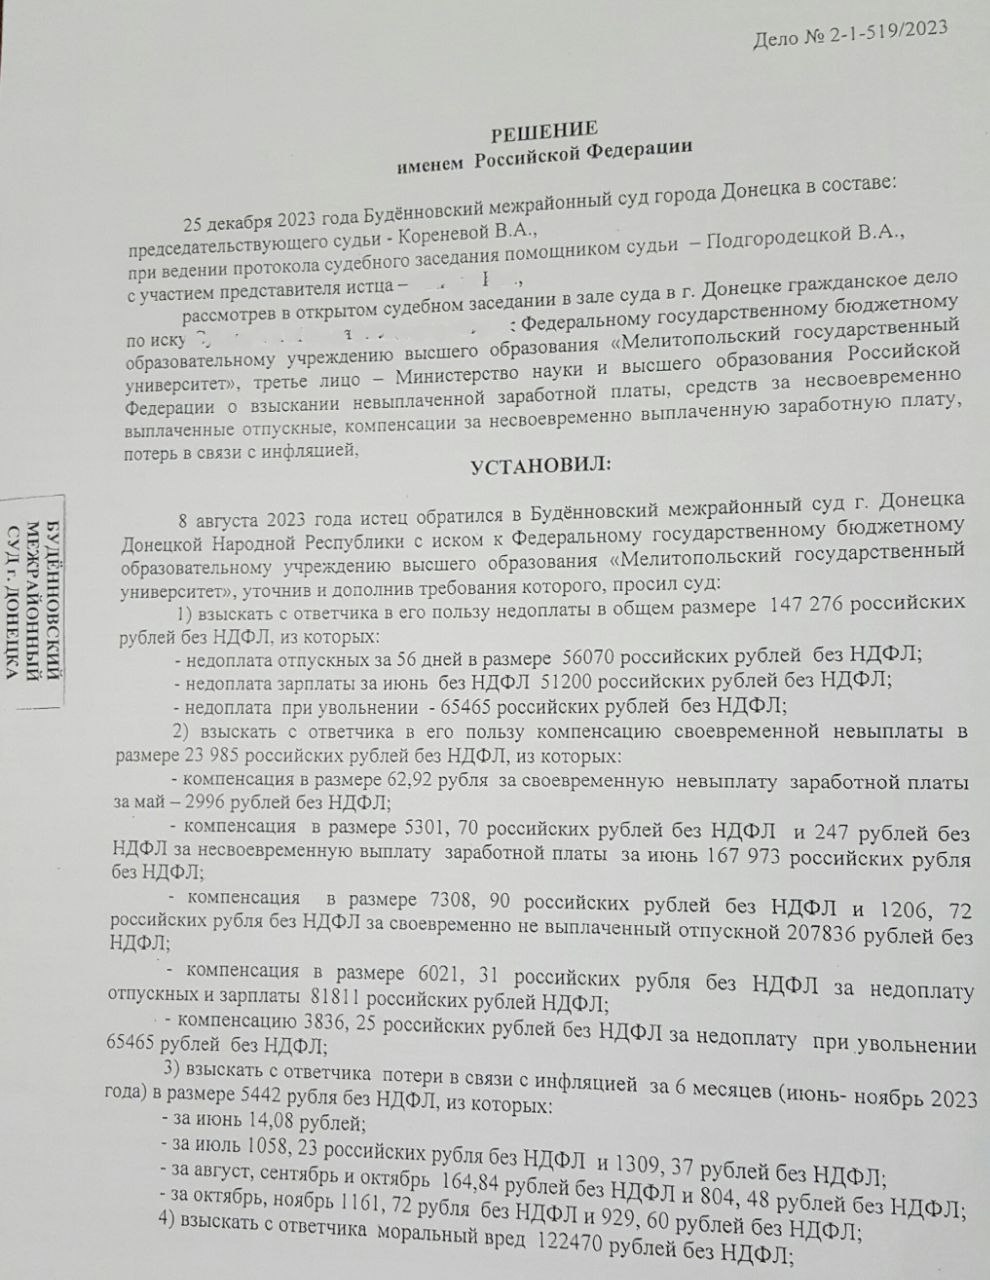 Мелітопольський псевдо-виш заборгував працівнику 265 тисяч рублів – той отримав їх через суд 1